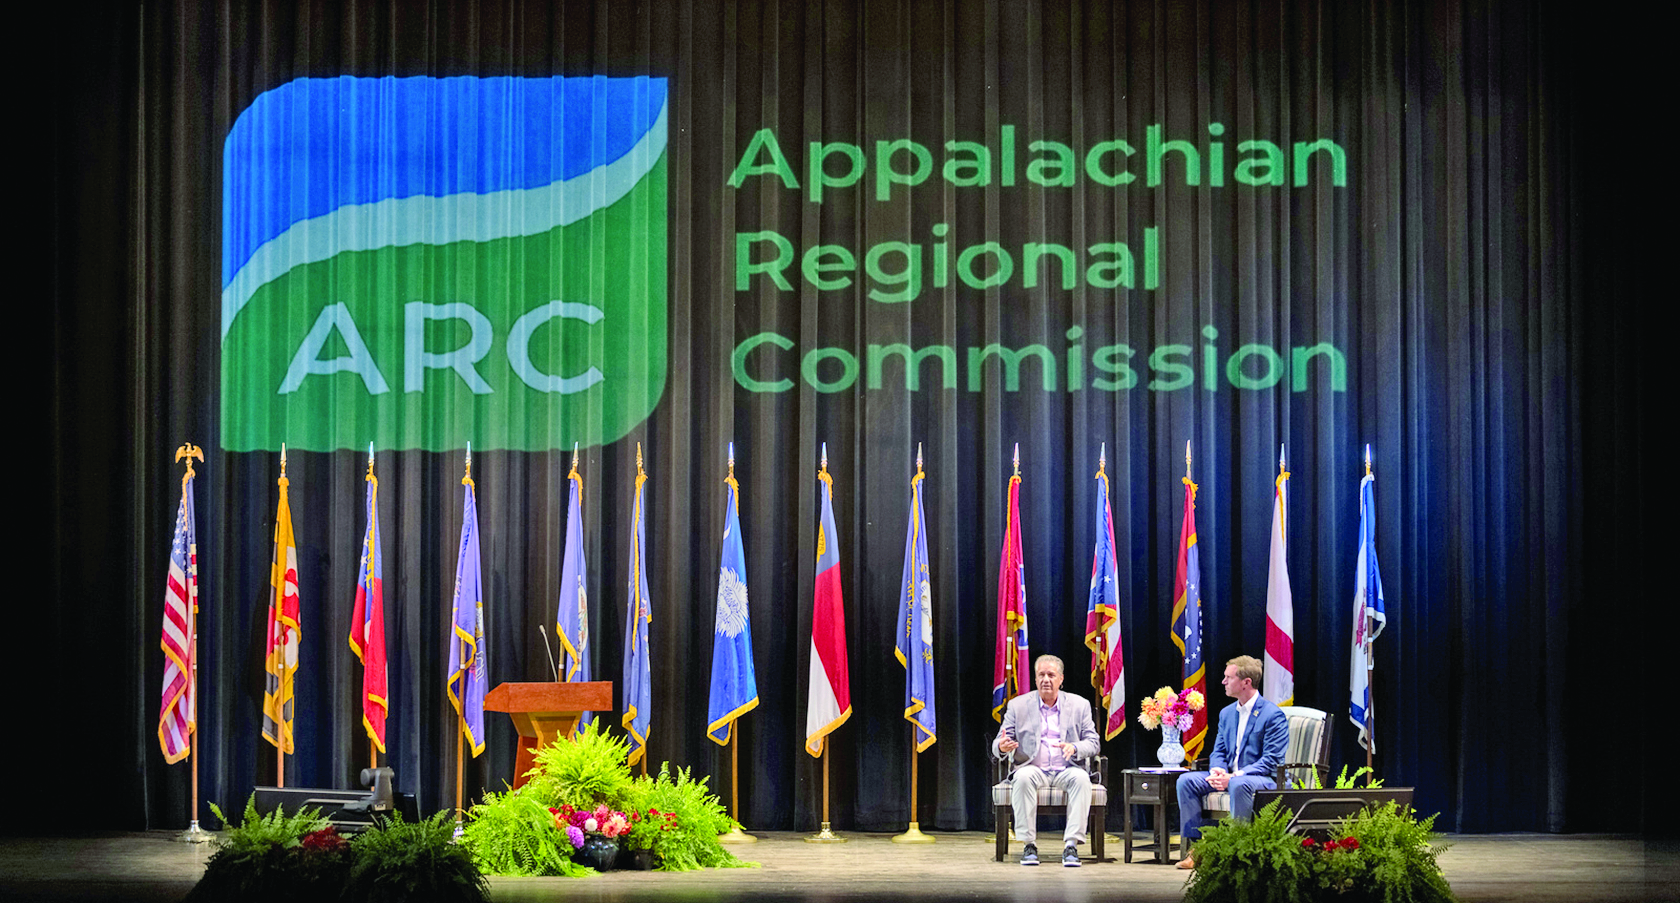 Appalachian Regional Commission in Ashland